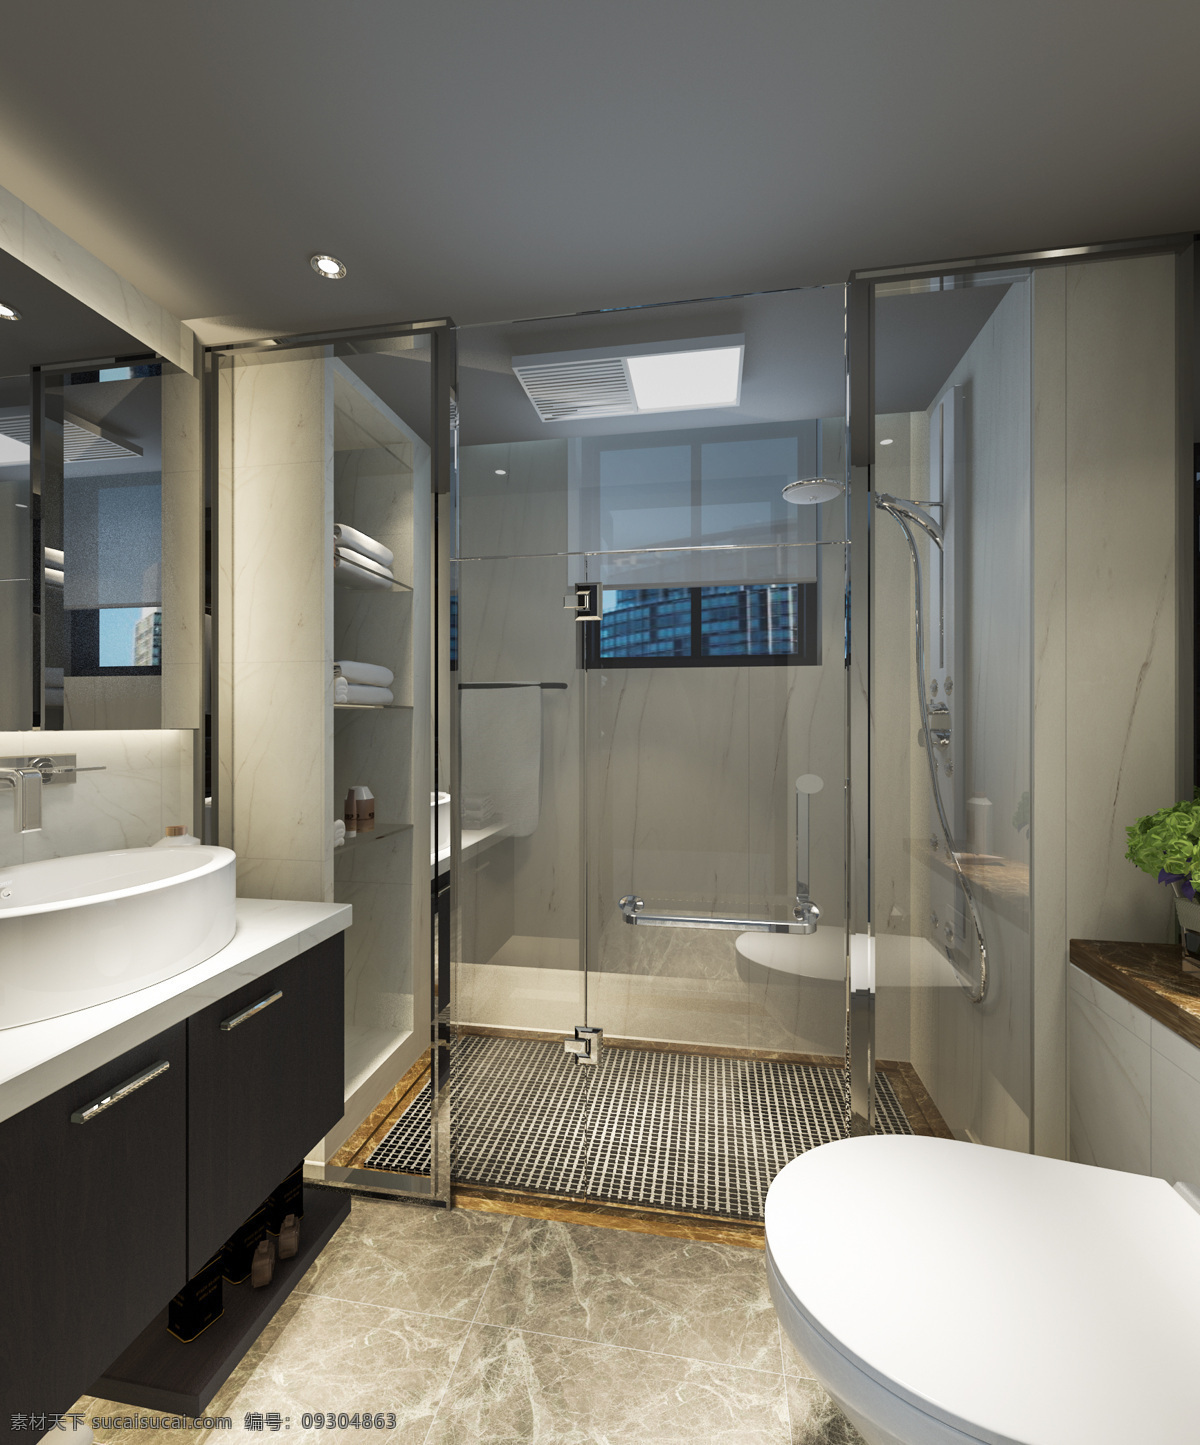 卫生间效果图 洗手间效果图 家装效果图 卫生间装修图 室内设计 三维效果图 3d 效果图 环境设计